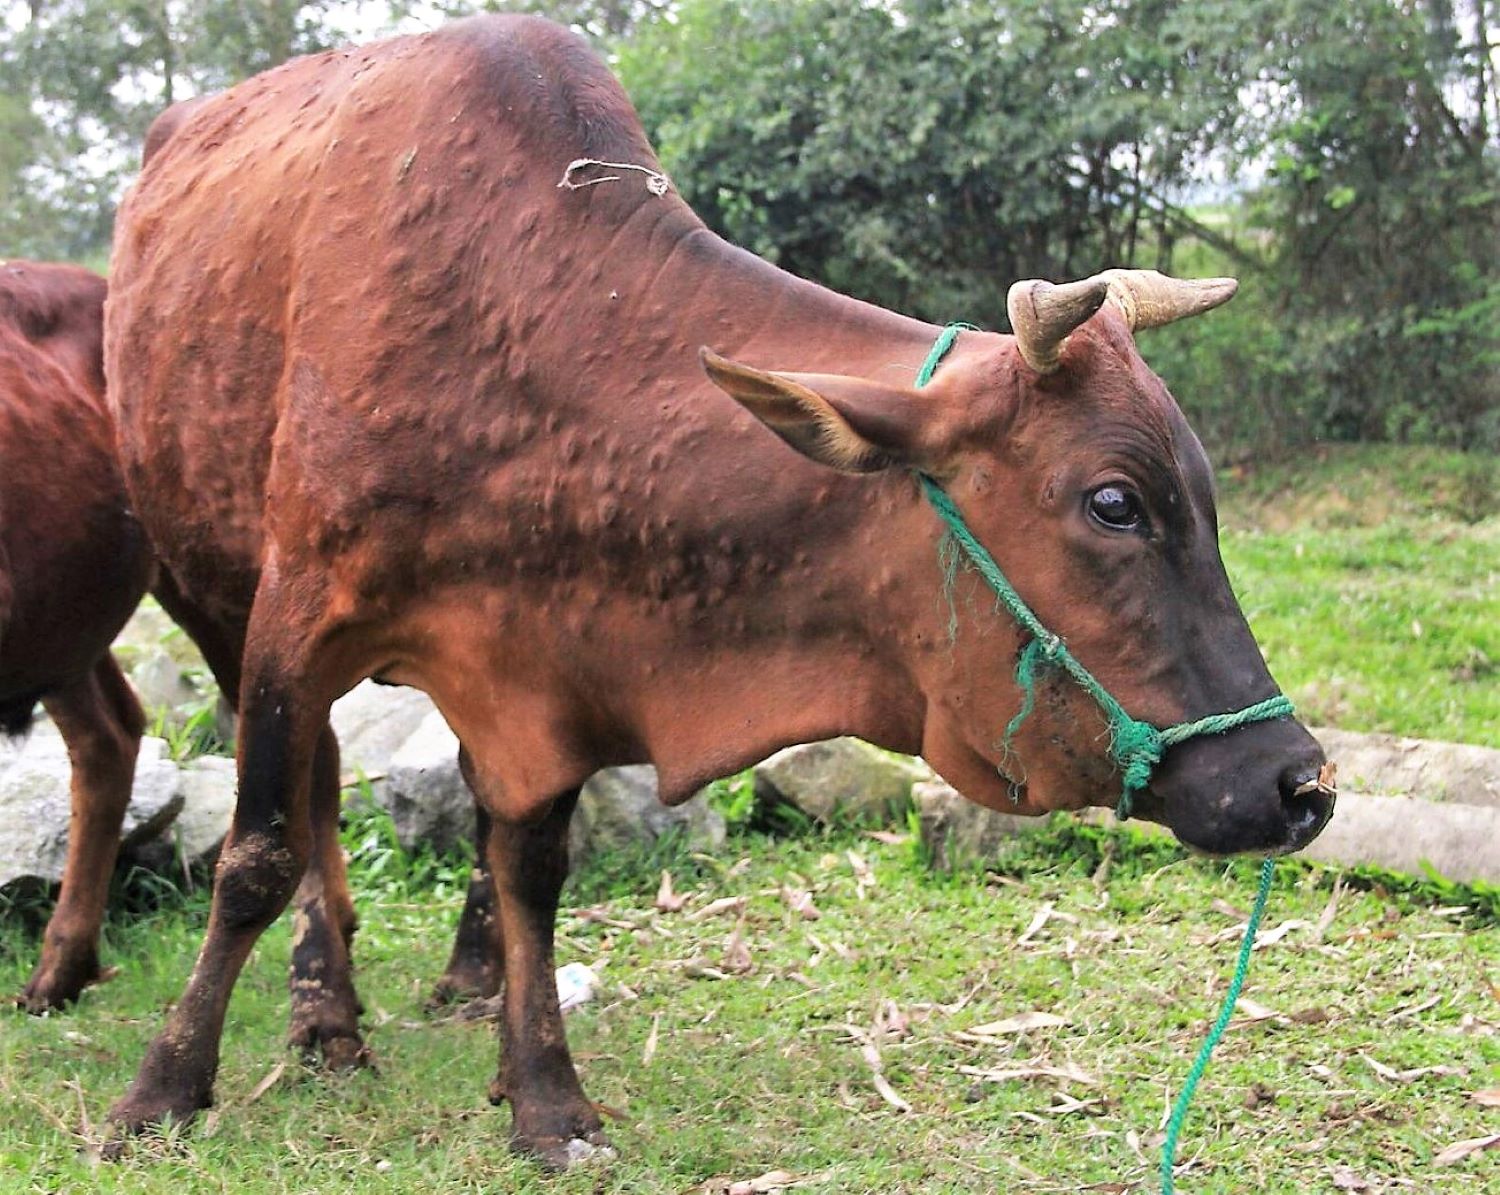 Bệnh viêm da nổi cục ở trâu, bò đang diễn biến phức tạp tại nhiều địa phương